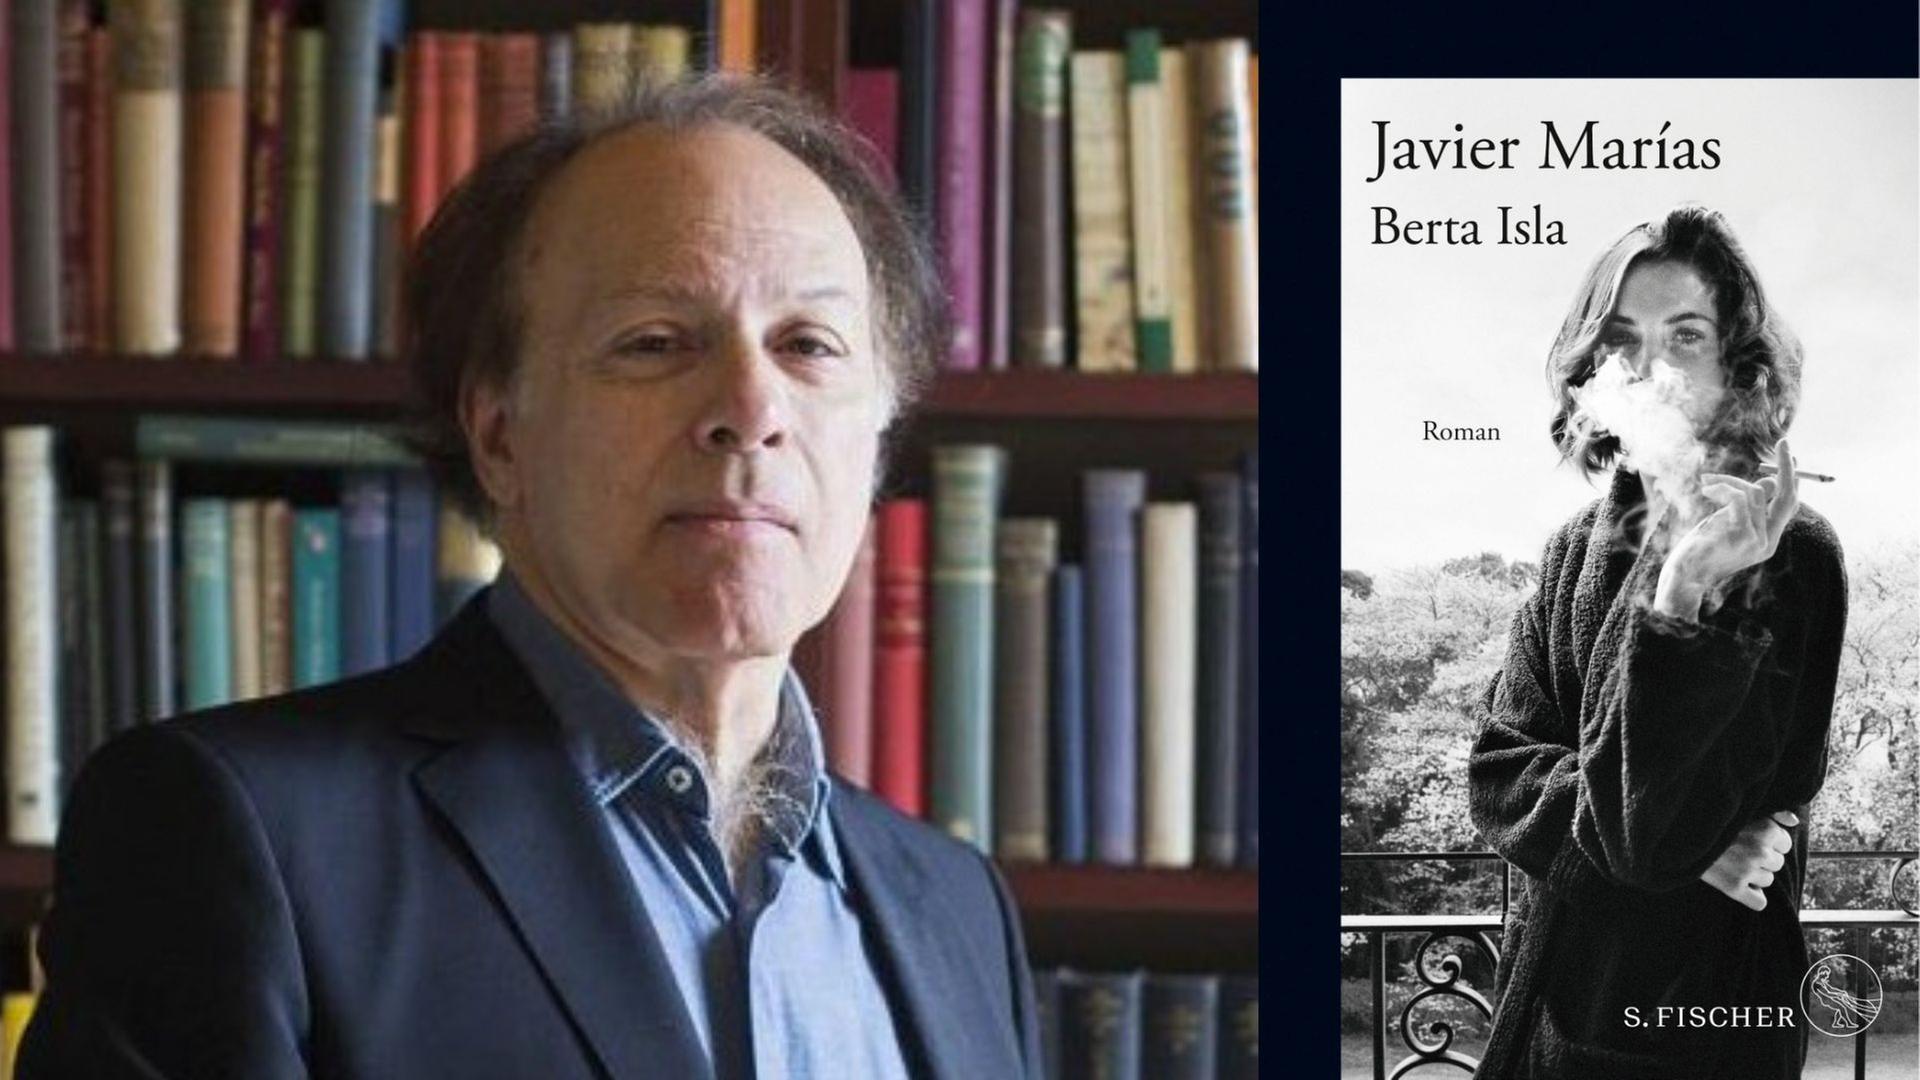 Zu sehen ist der Autor Javier Marías vor einer Bücherwand und sein Roman "Berta Isla".